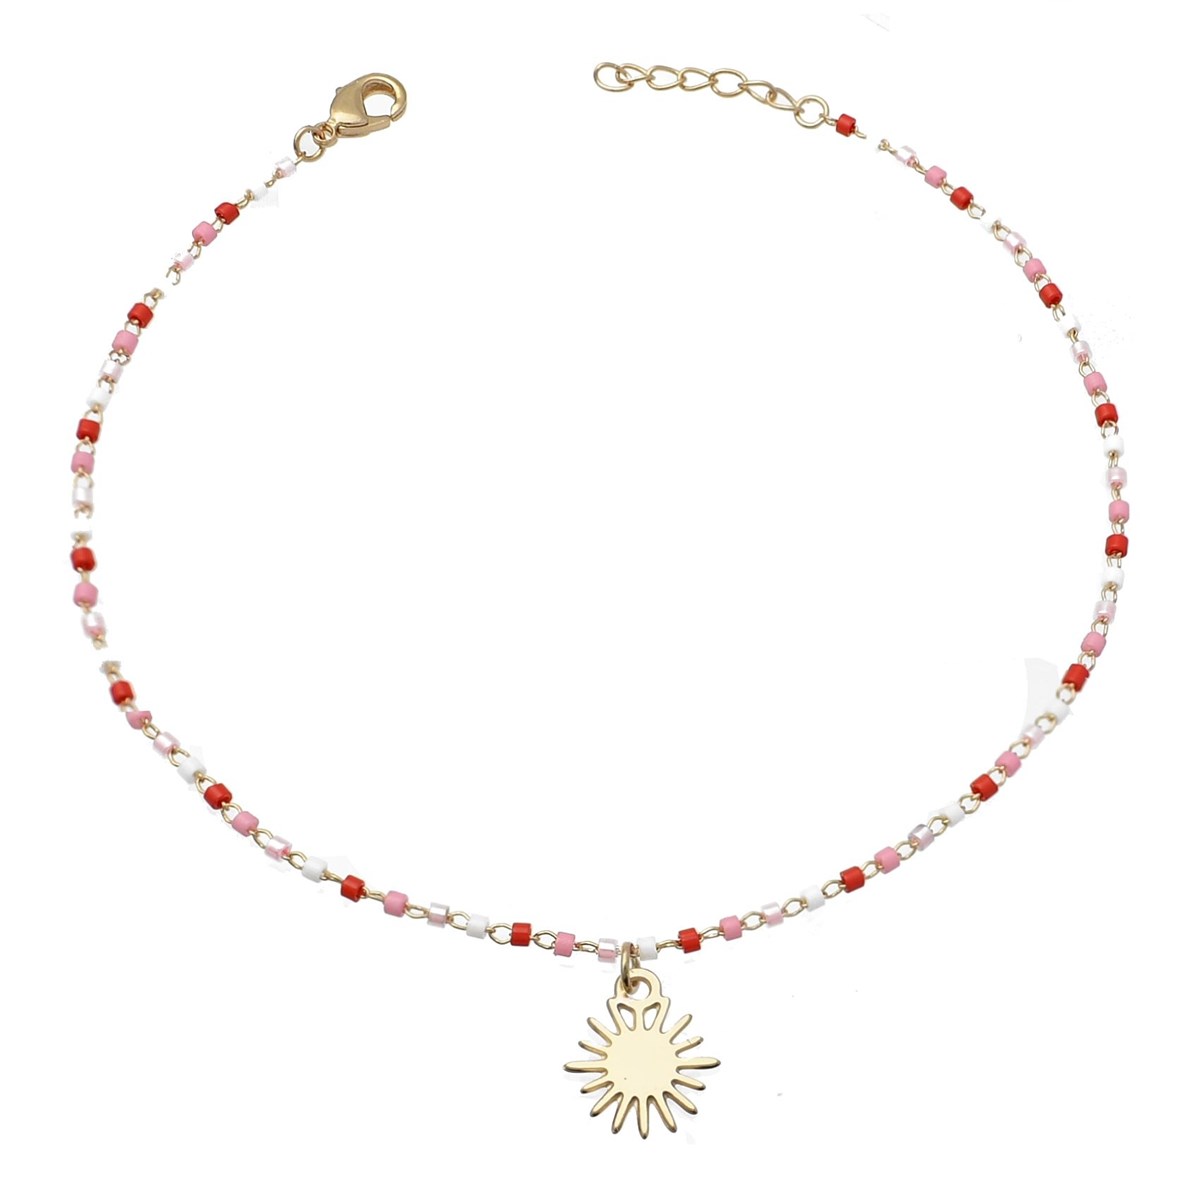 Chaîne de cheville soleil pendant perles Miyuki rouges roses et blanches Plaqué OR 750 3 microns